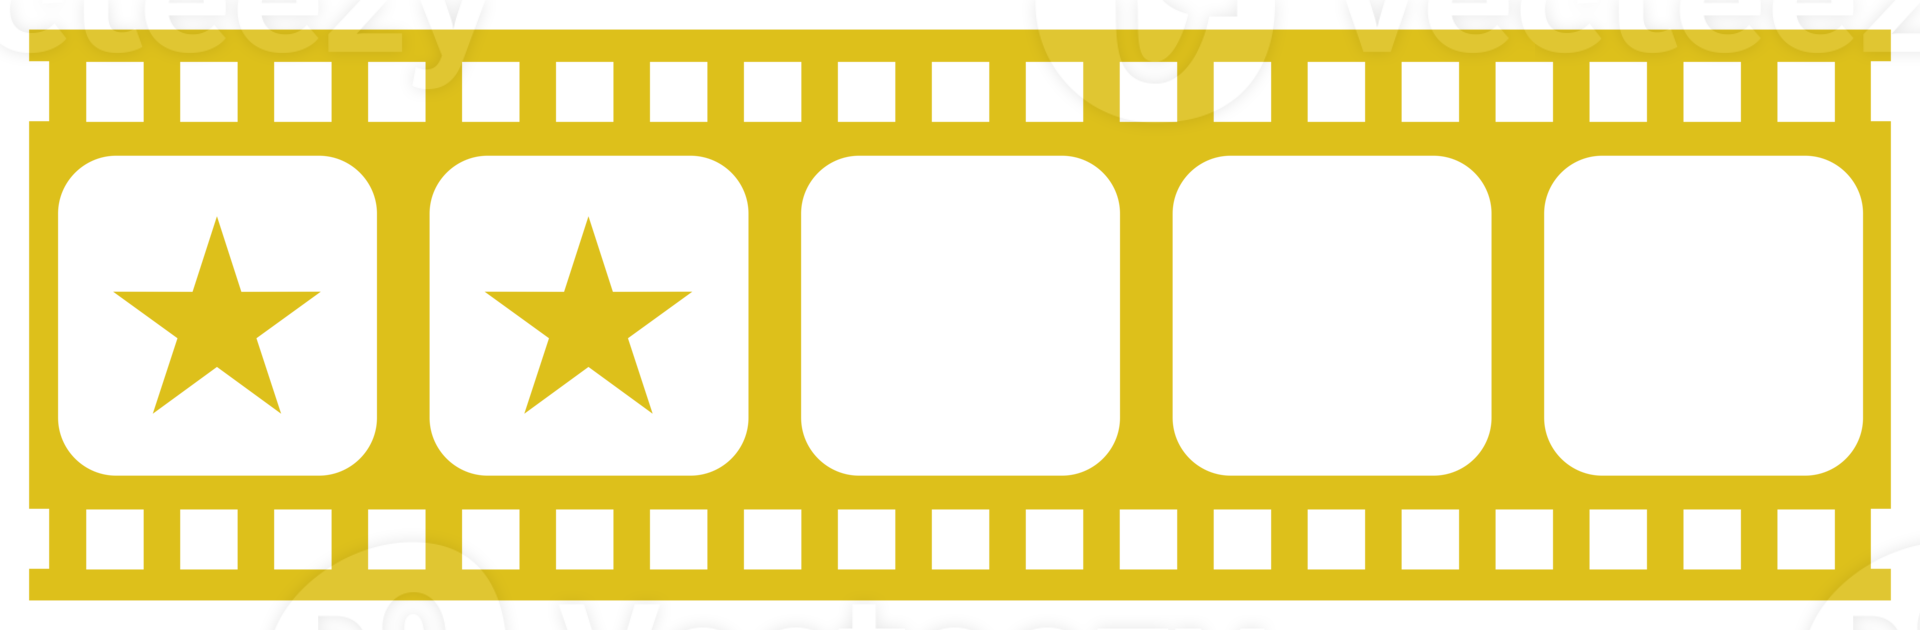 visual do signo de cinco 5 estrelas na silhueta da faixa do filme. símbolo de ícone de classificação por estrelas para revisão de filme ou filme, pictograma, aplicativos, site ou elemento de design gráfico. classificação 2 estrelas. formato png